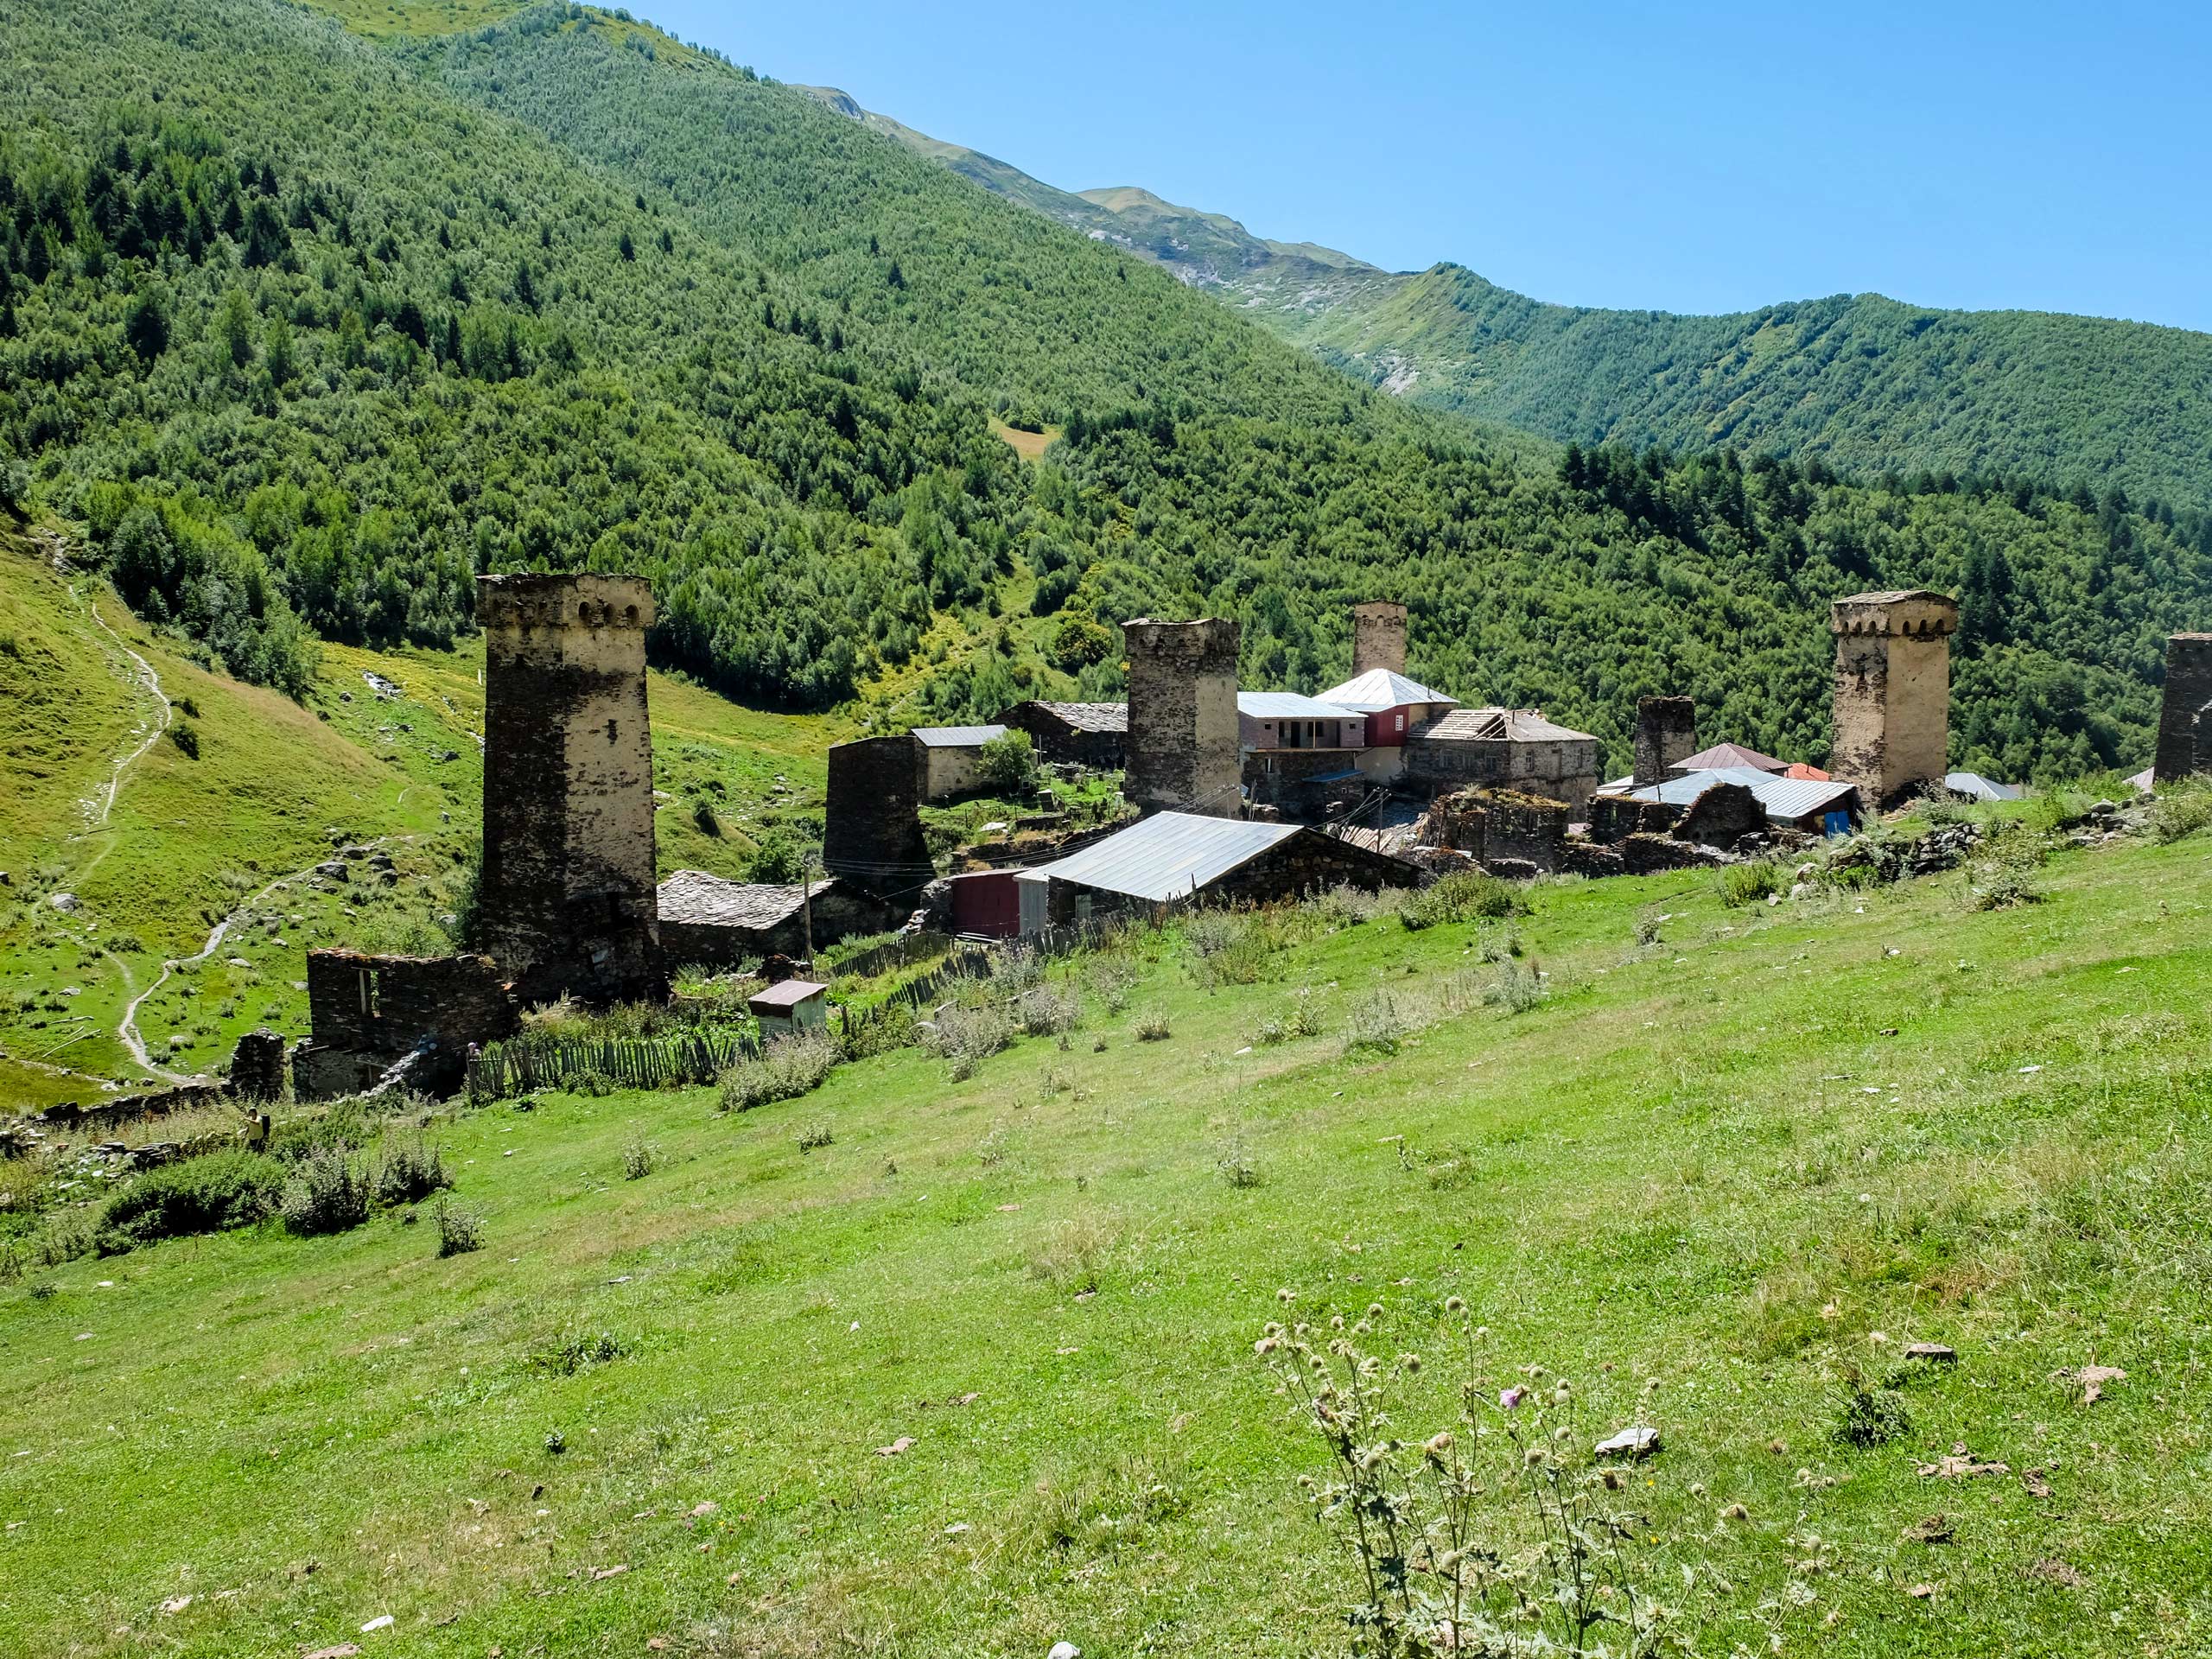 Old village near mountains in Georgia